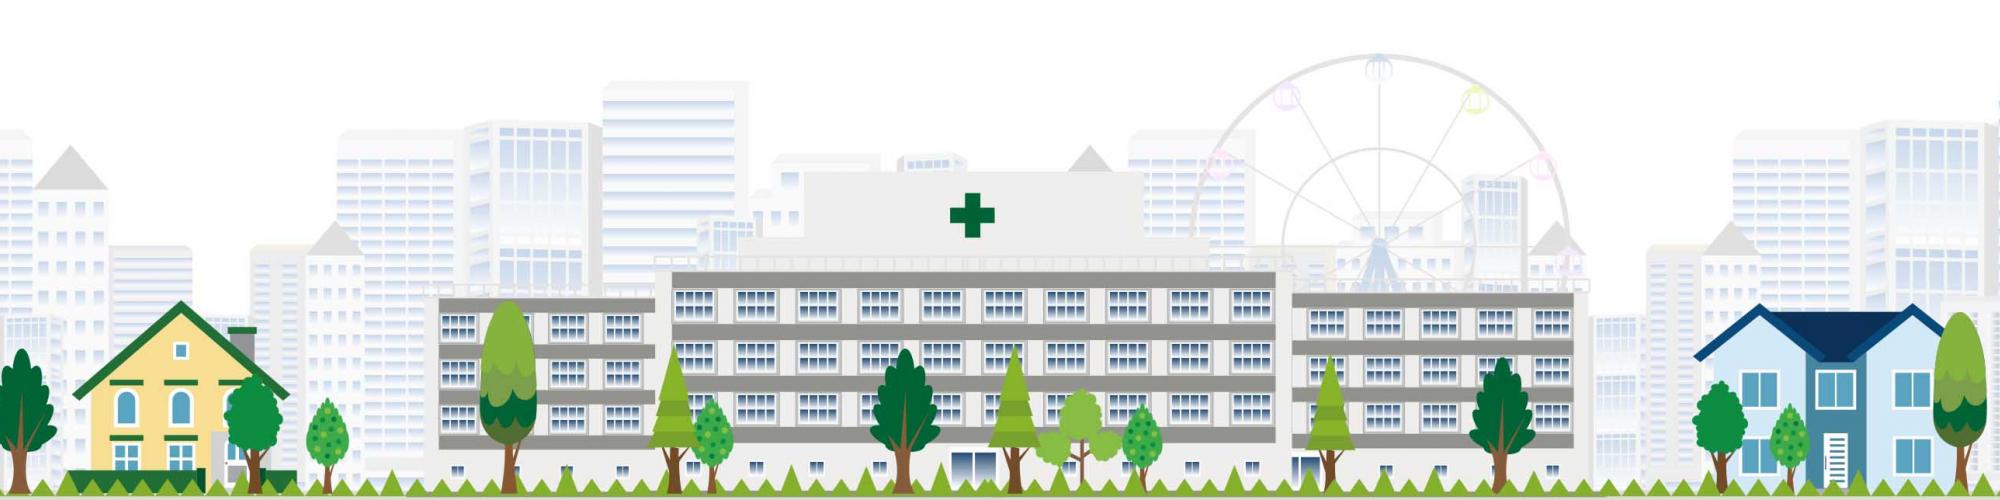 Medical Park Bad Wiessee GmbH & Co. KG - Klinik St. Hubertus